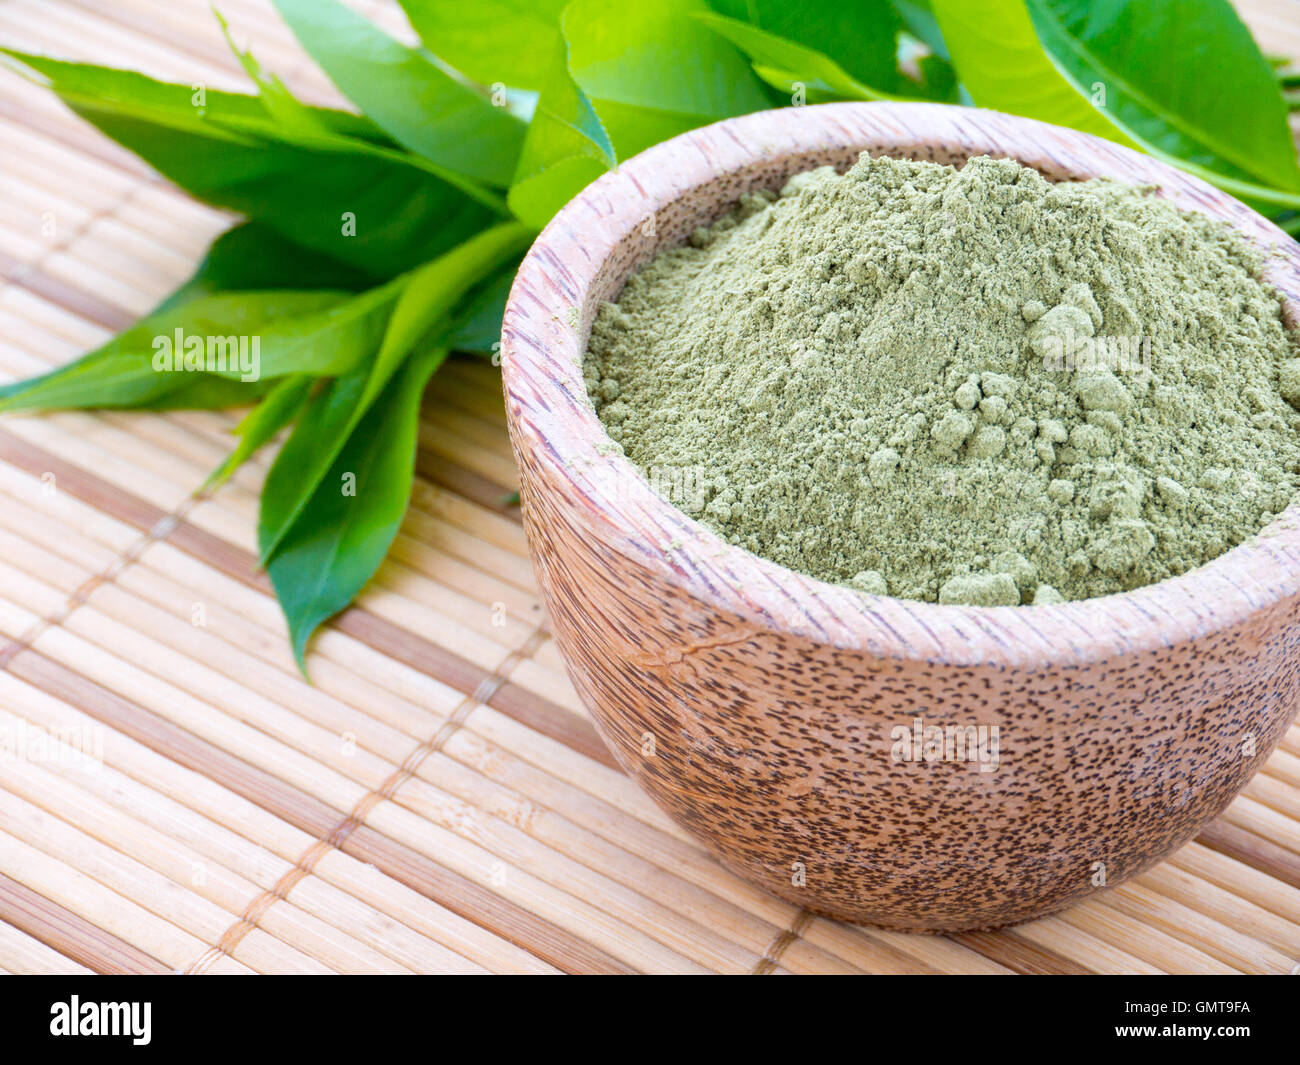 La henna en polvo en el tazón de coco en el fondo de hojas verdes Foto de stock